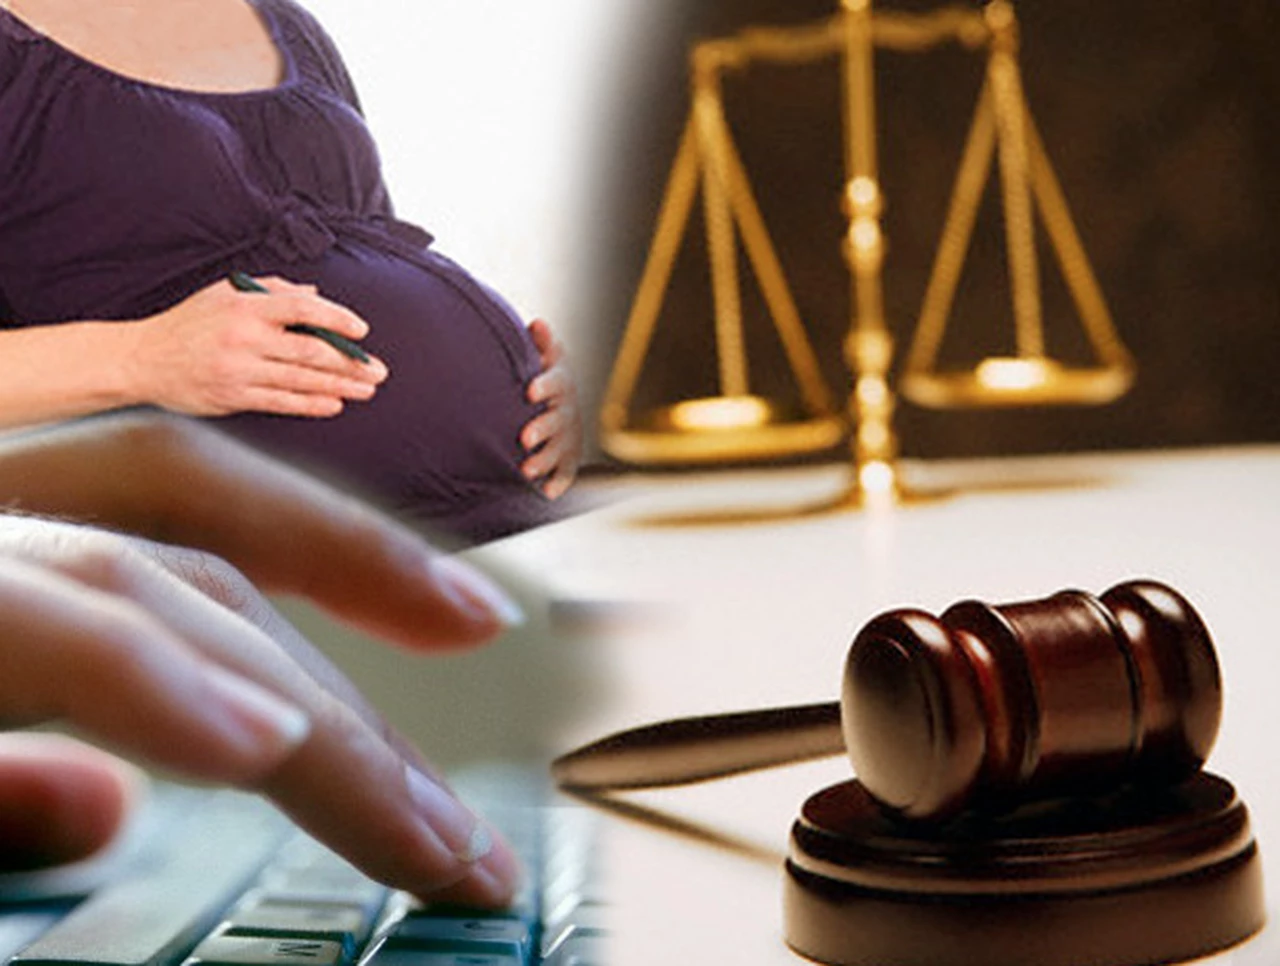 Condenan a empresa a indemnizar a embarazada despedida, pese a que estaba en perí­odo de prueba